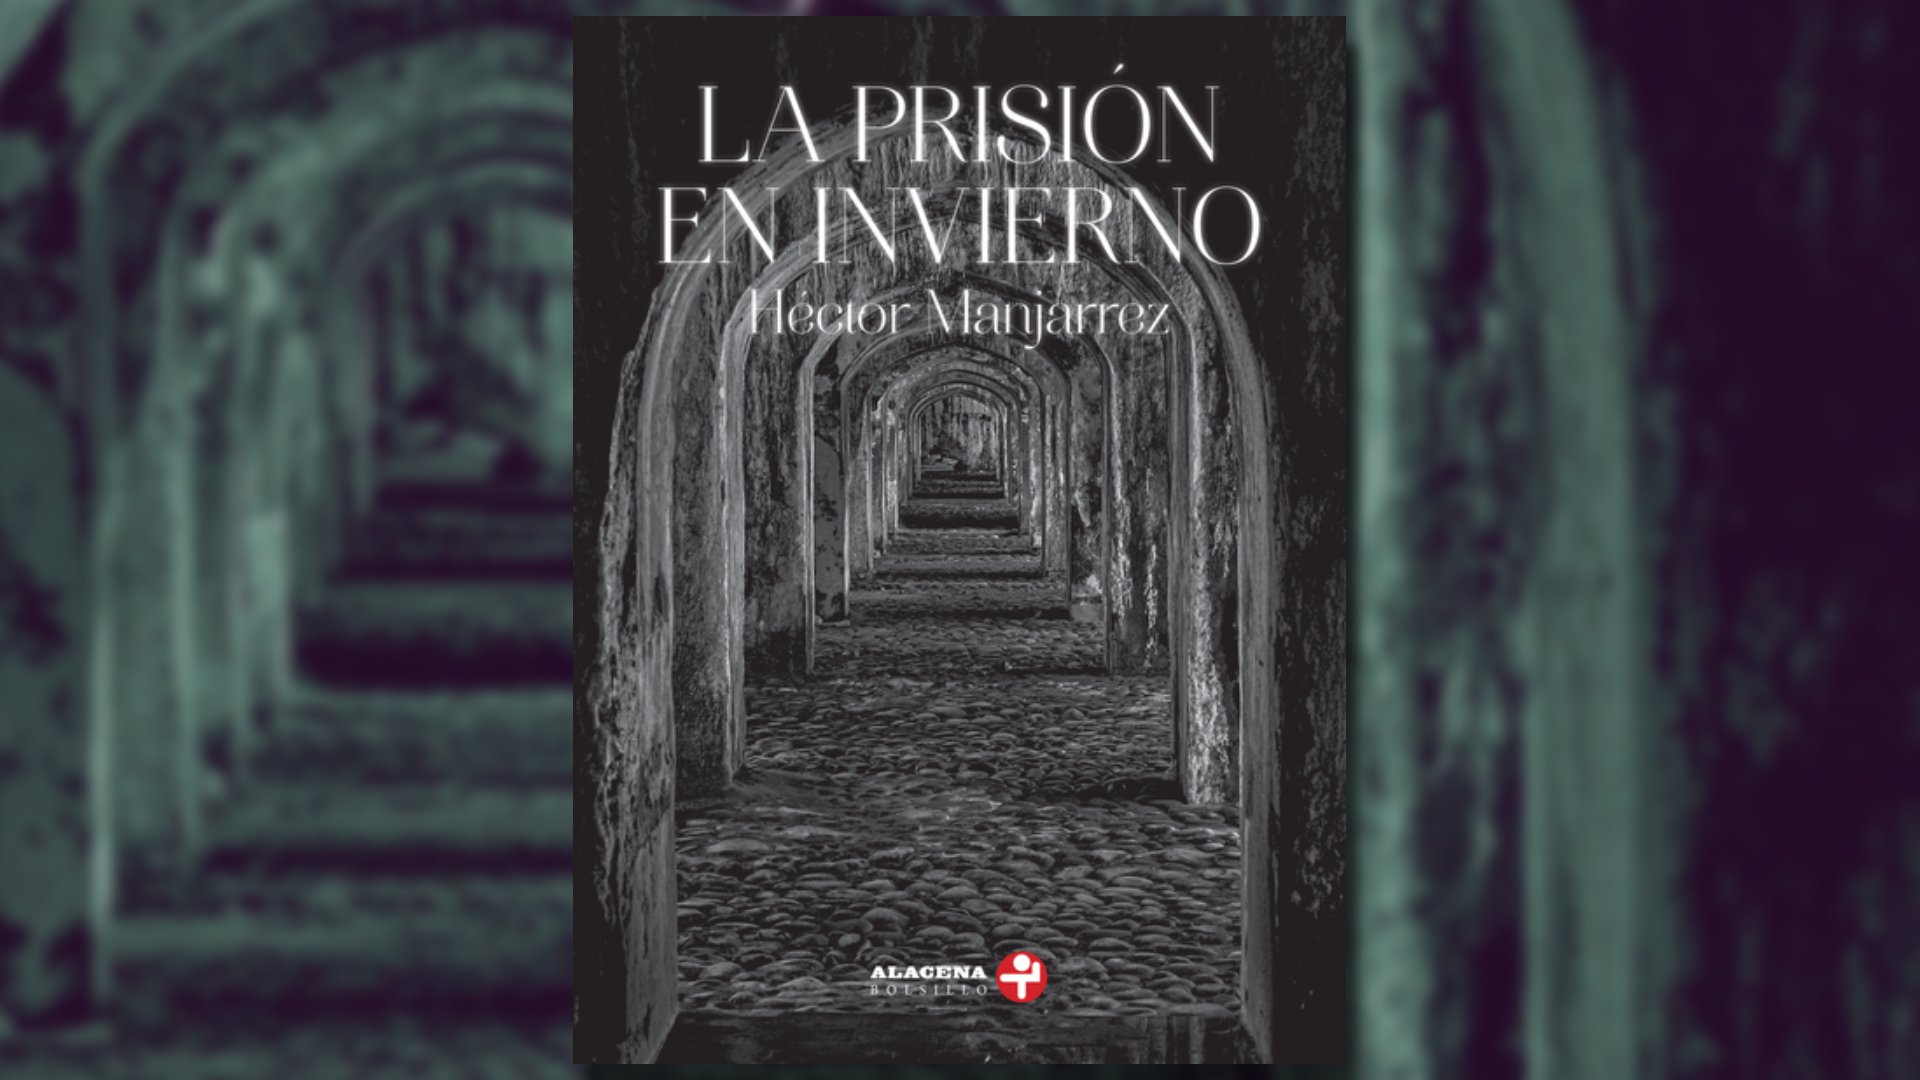  "La prisión en invierno" - Héctor Manjarrez